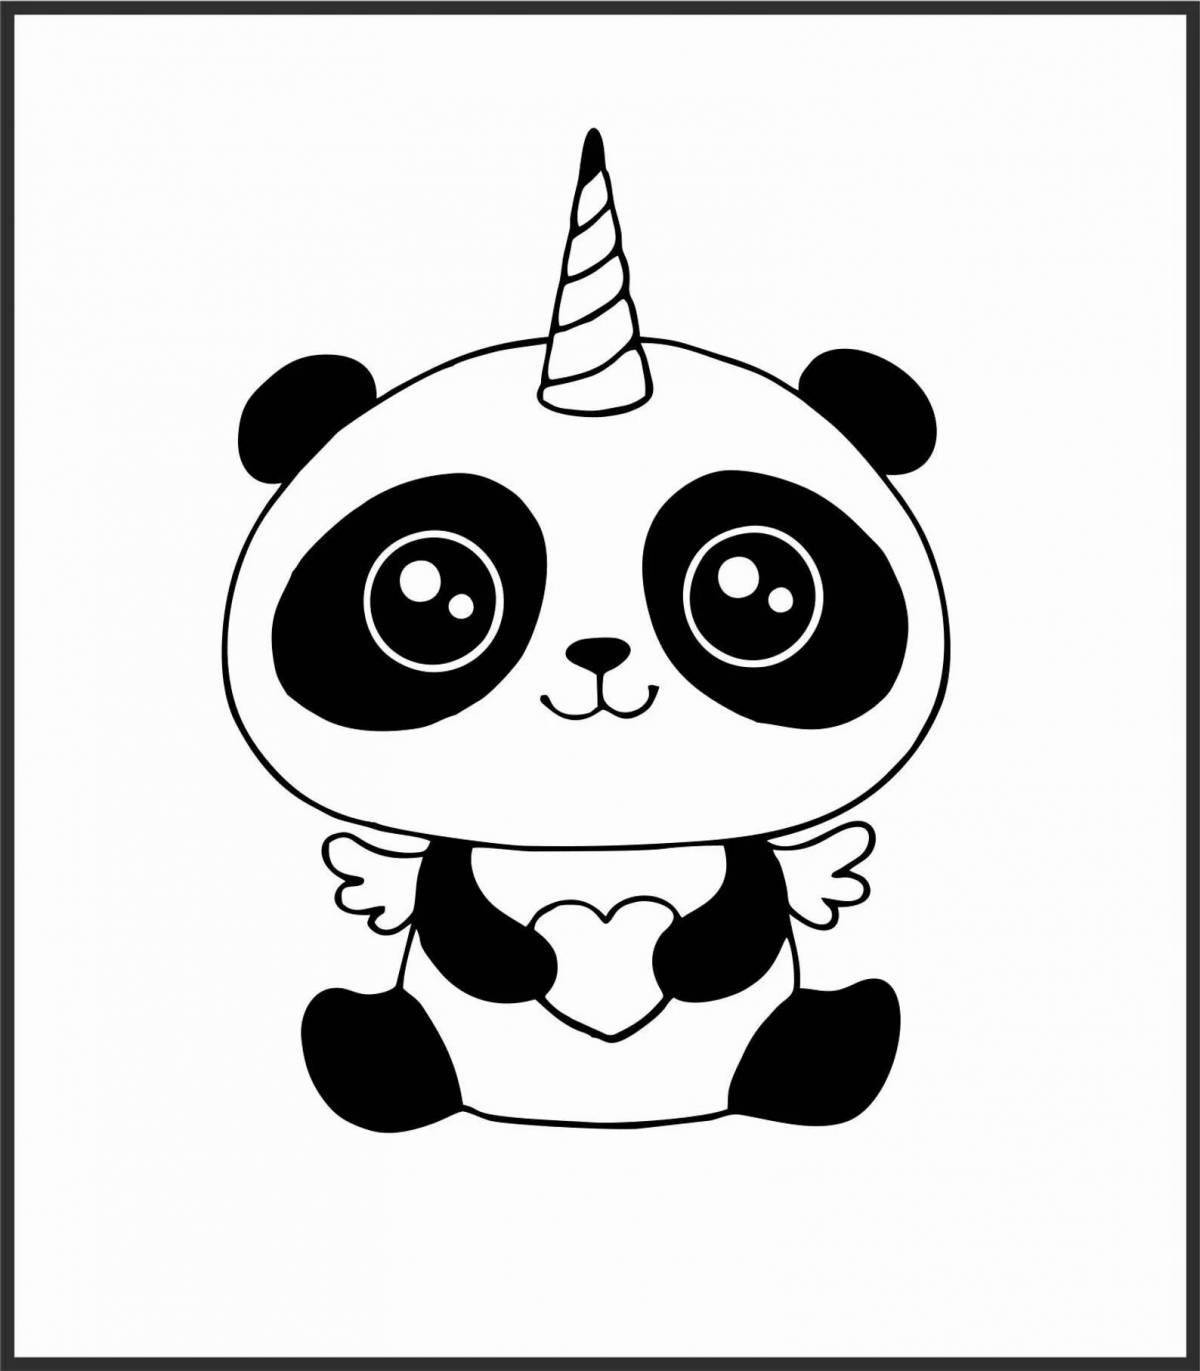 Adorable cute panda coloring book